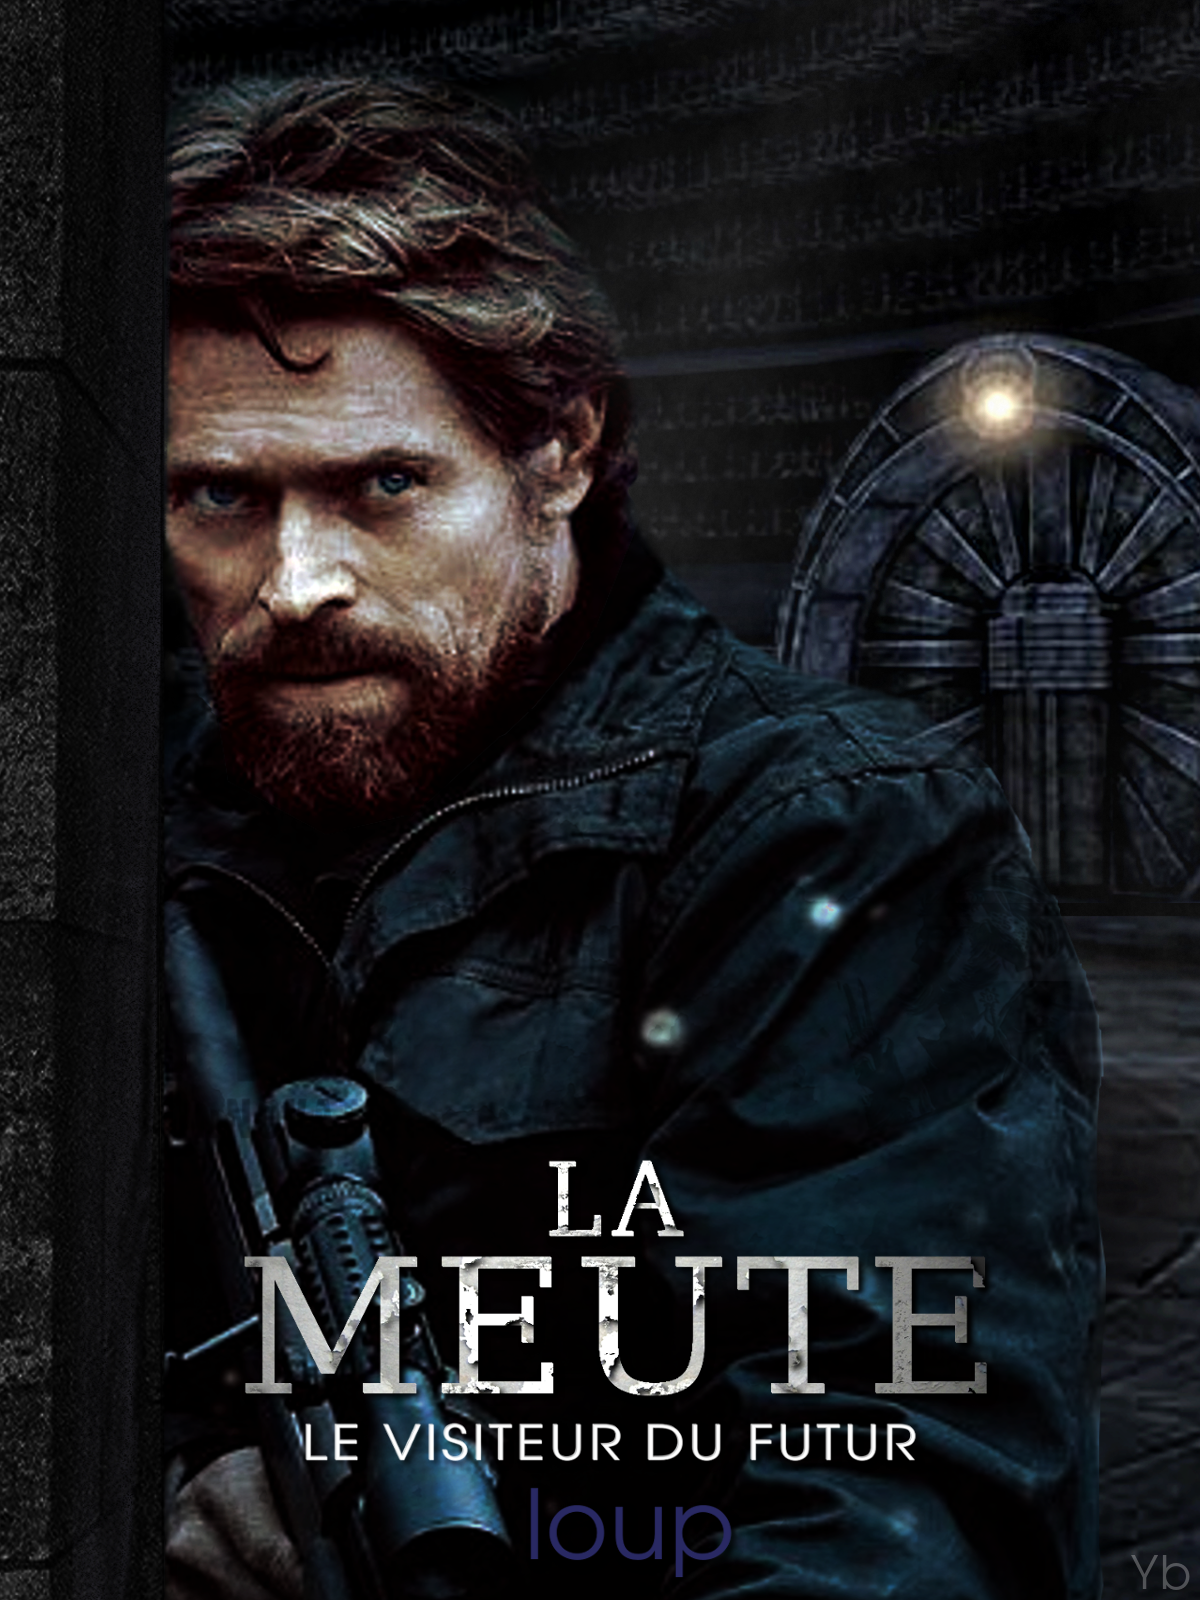  La Gazette de Néo-Versailles : Concours de Fan-art La Meute  (N°9 - Février 2015) 01_Loup04